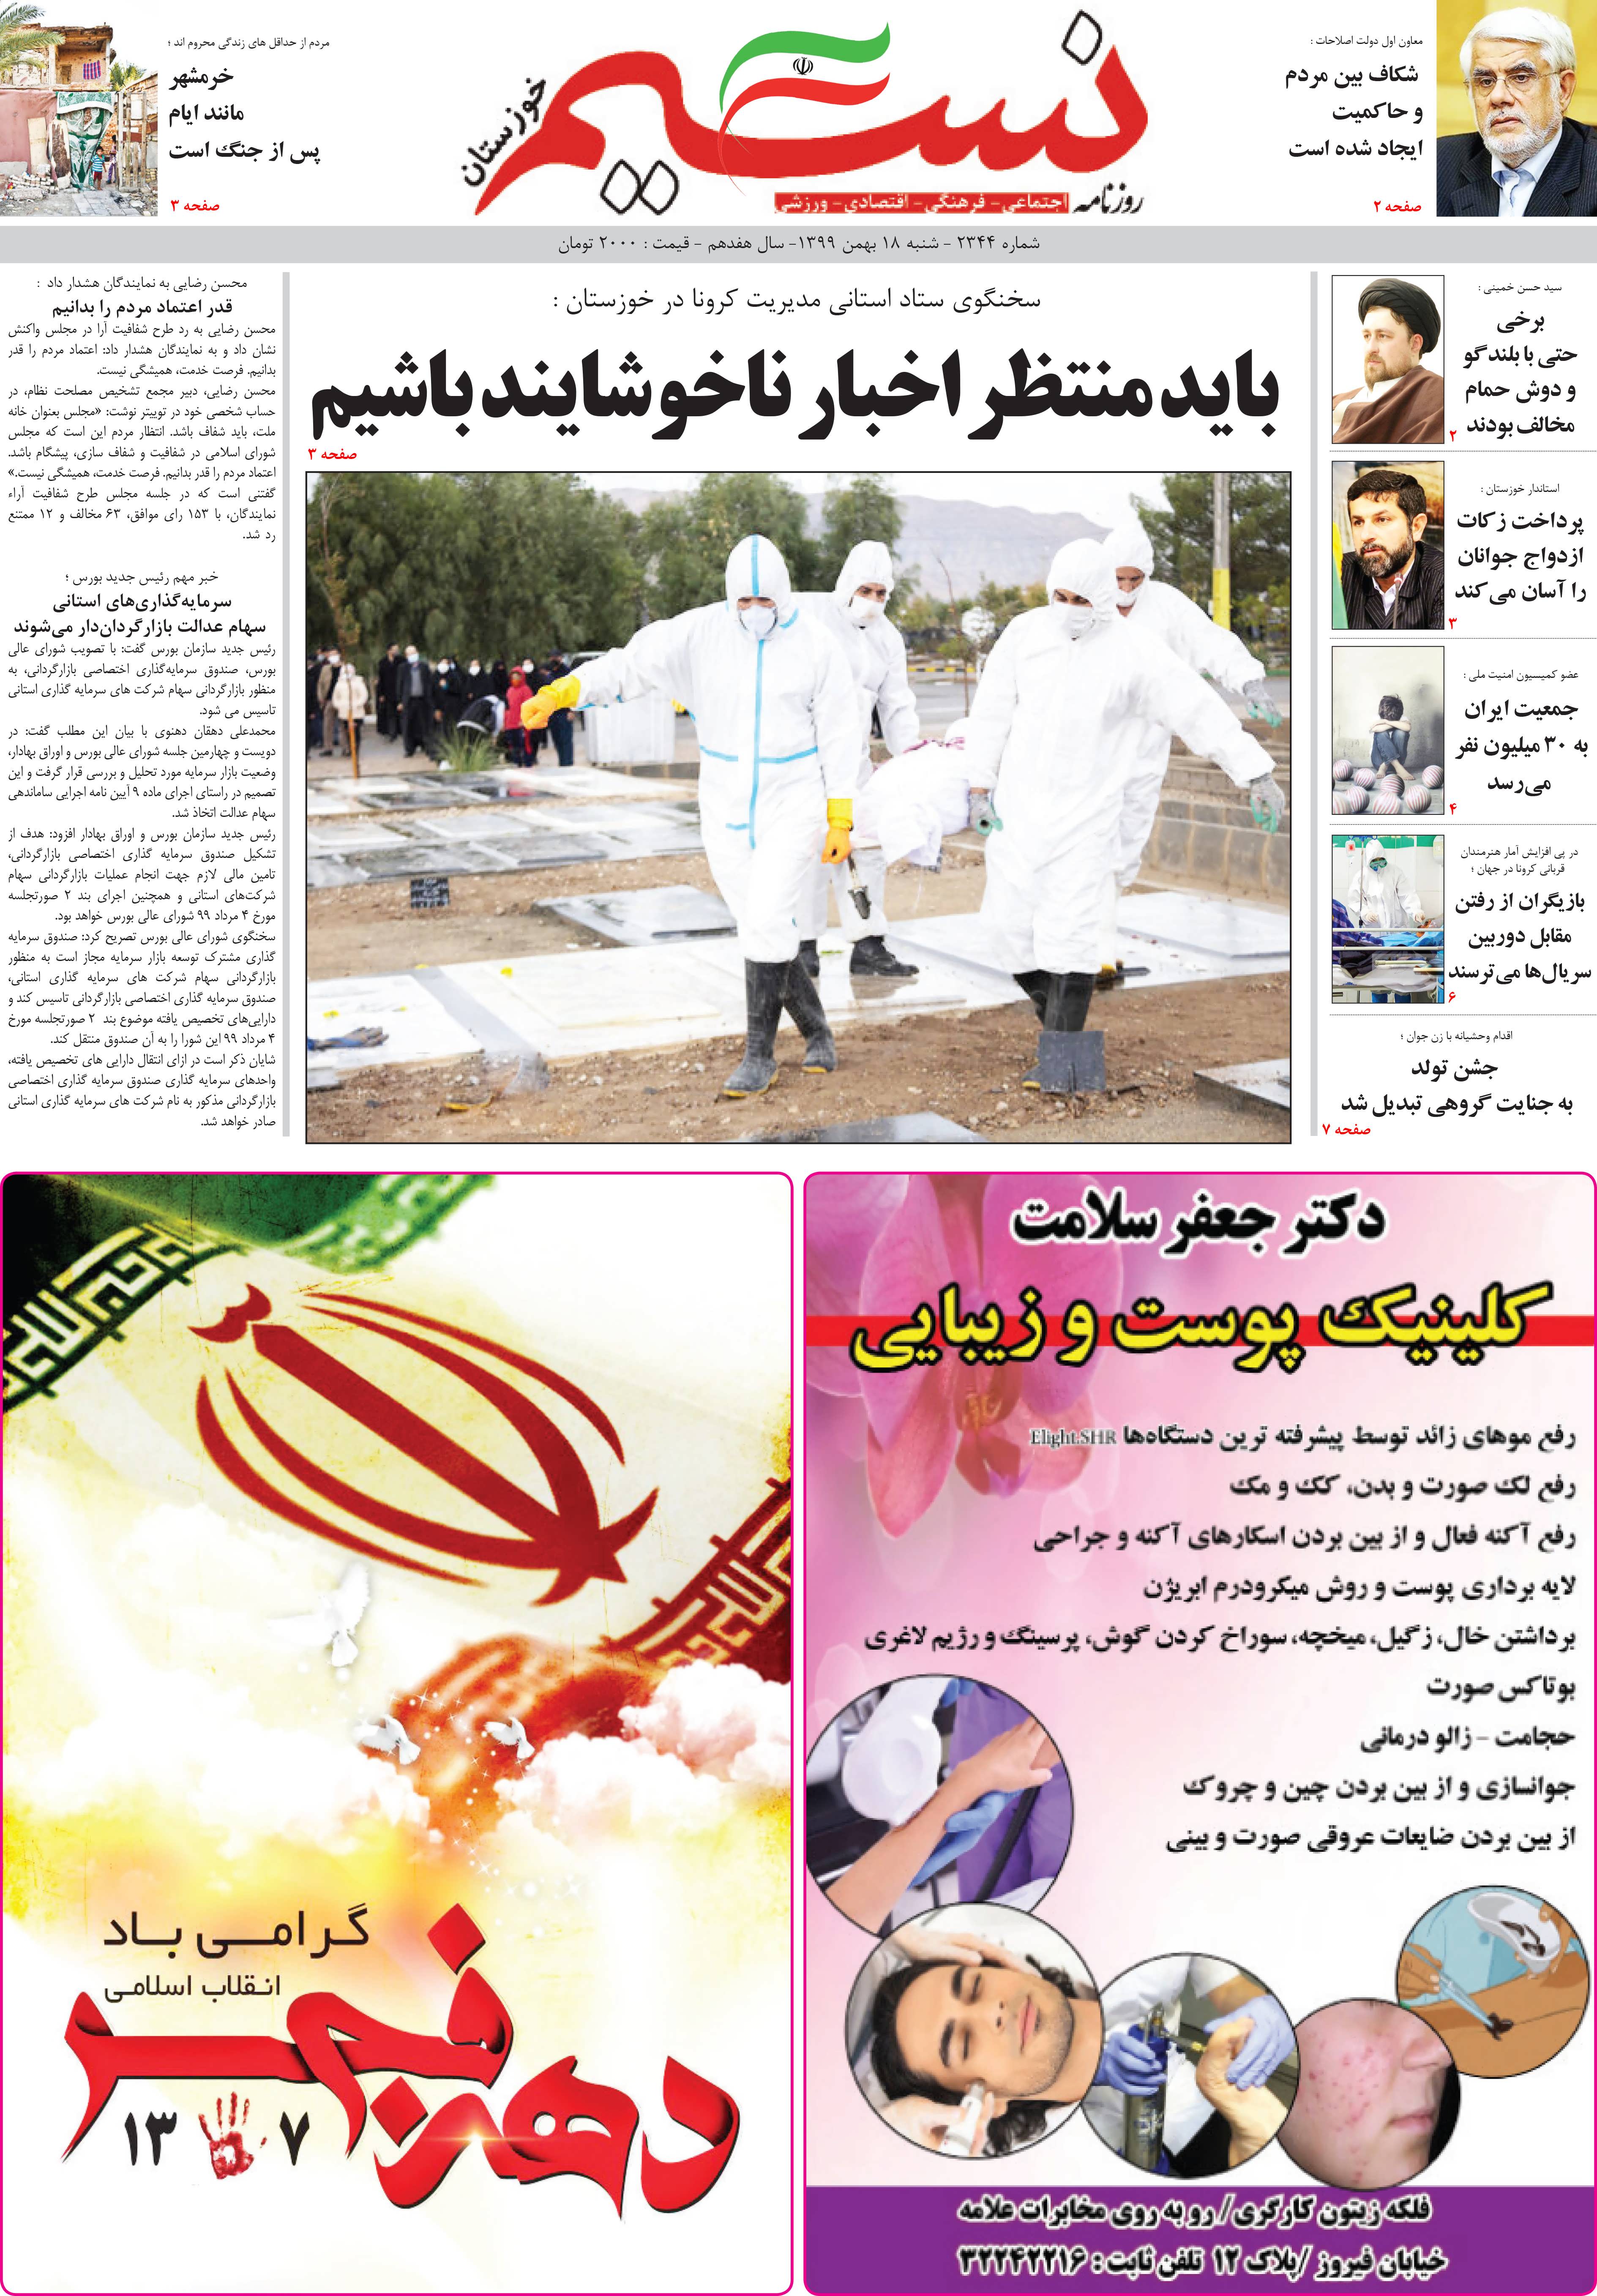 صفحه اصلی روزنامه نسیم شماره 2344 